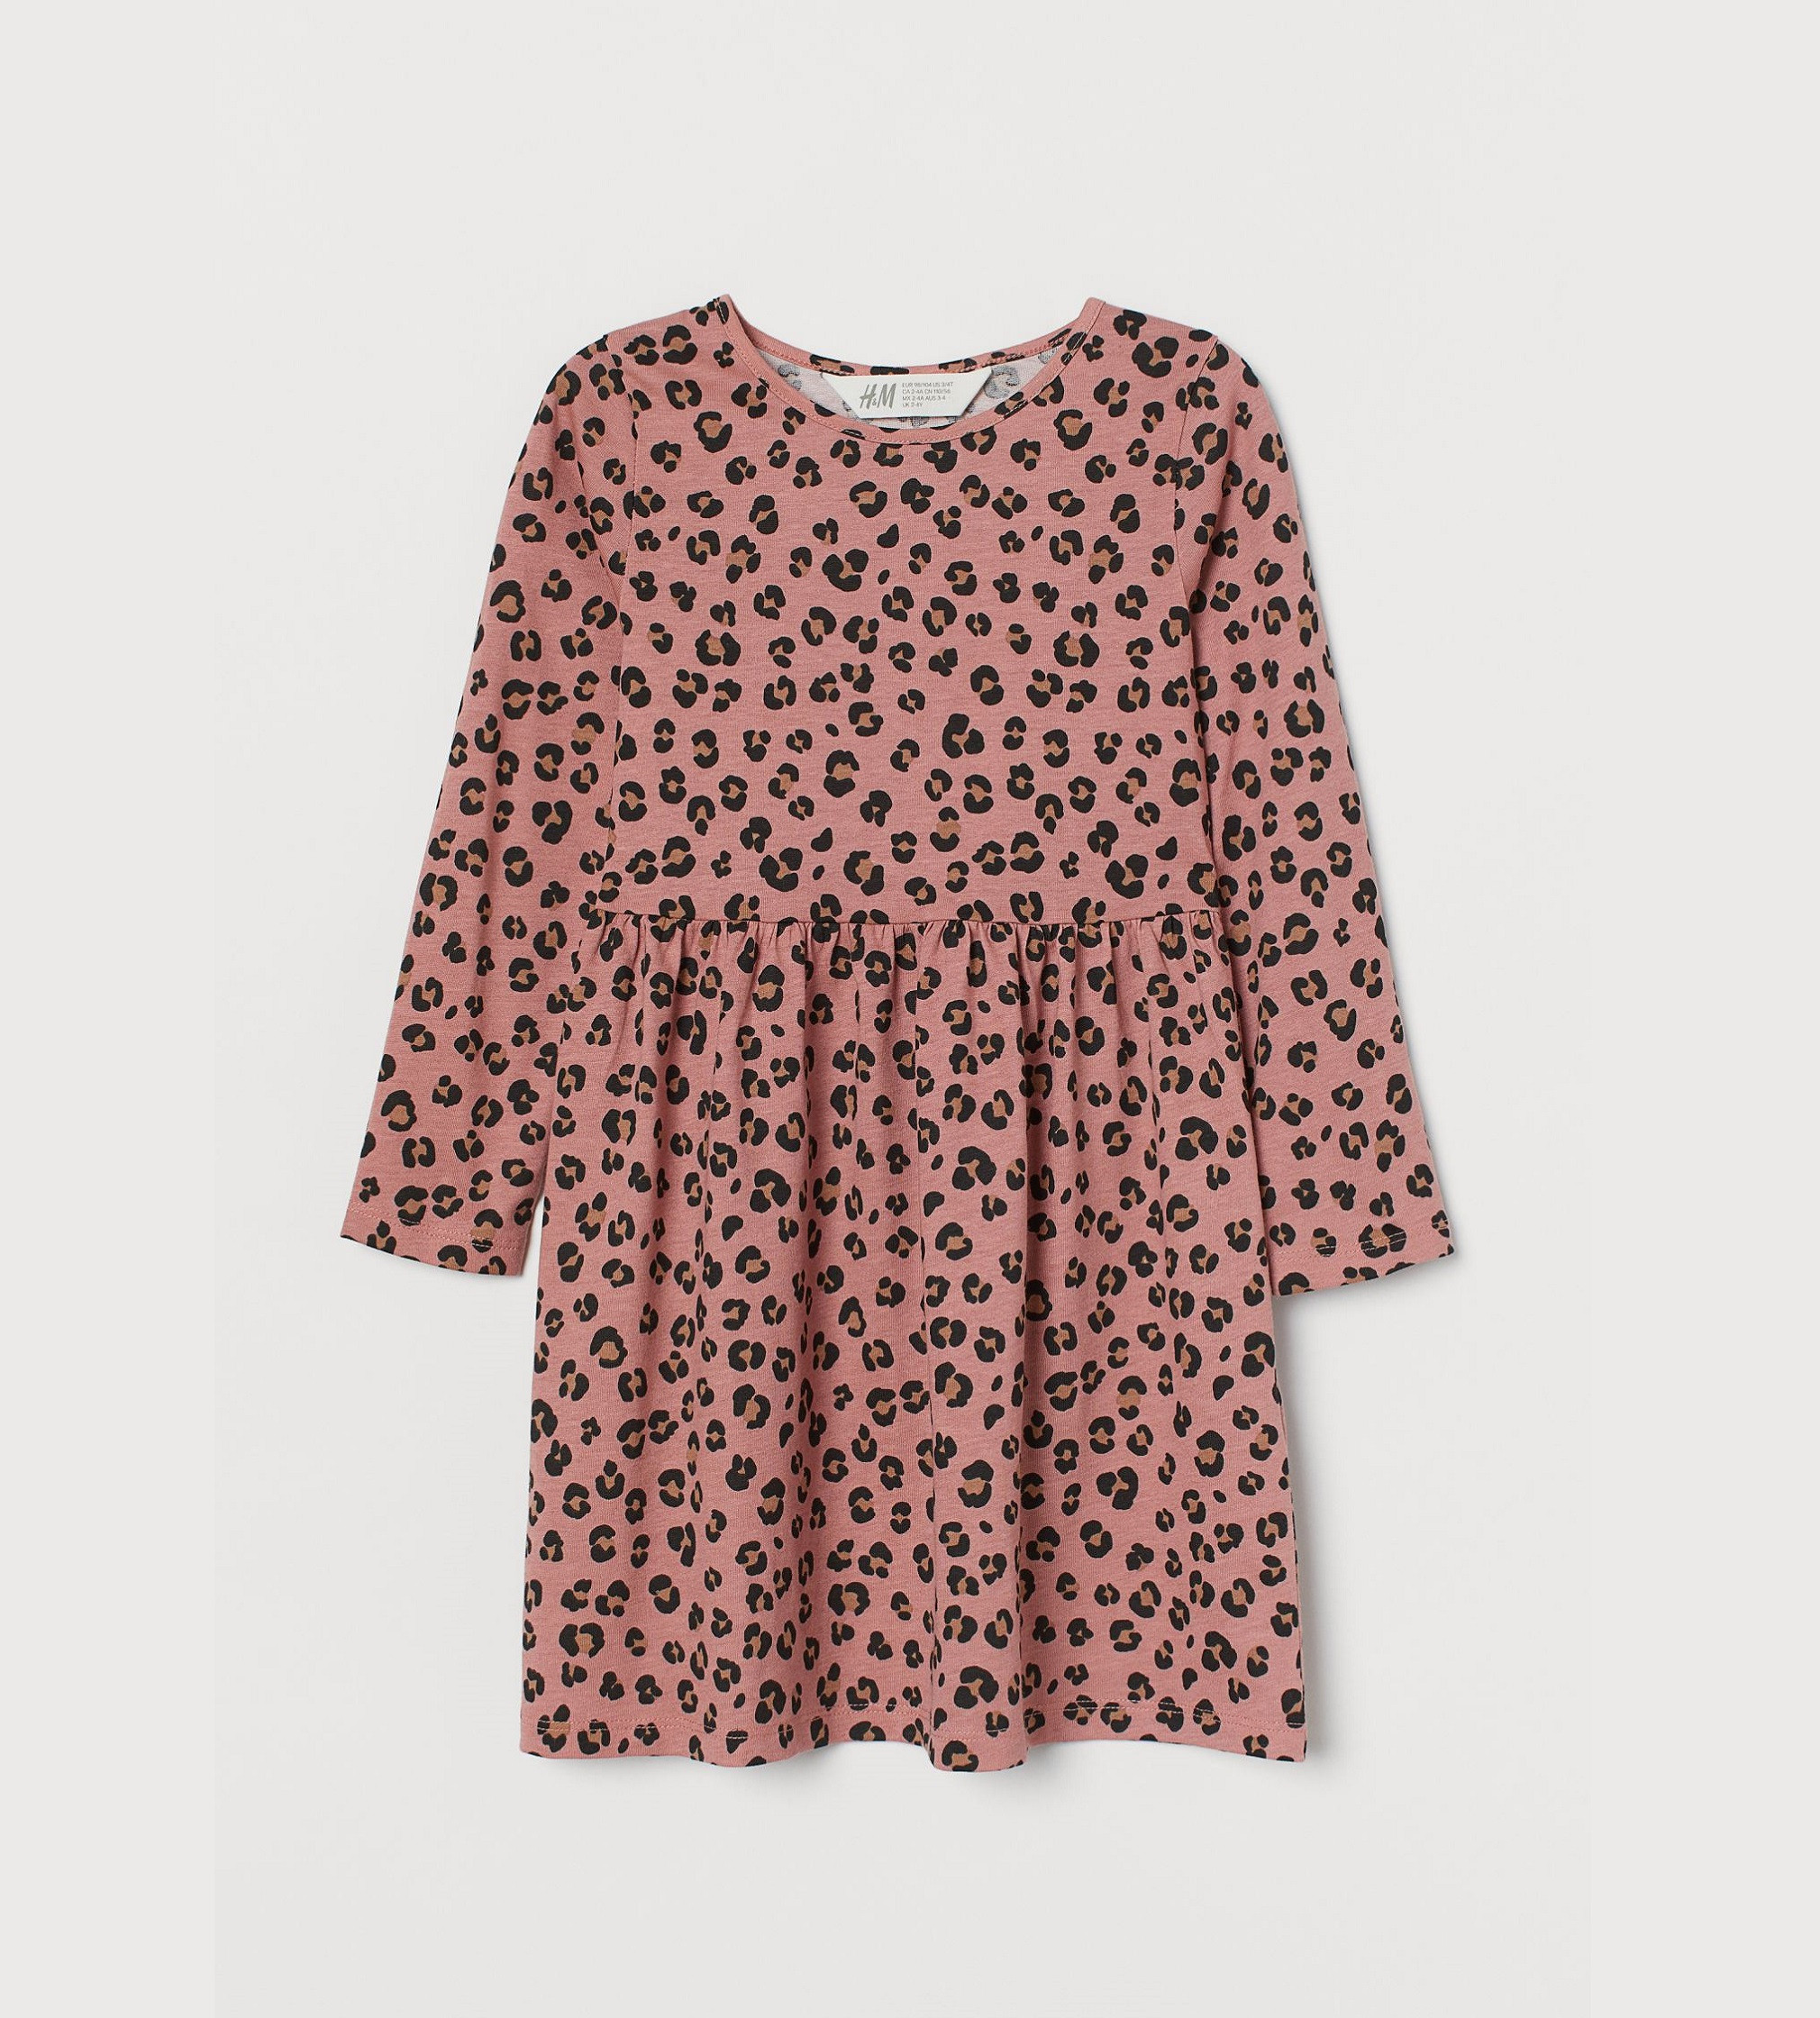 Купить Платье H&M Dusty rose/leopard print - фото 1